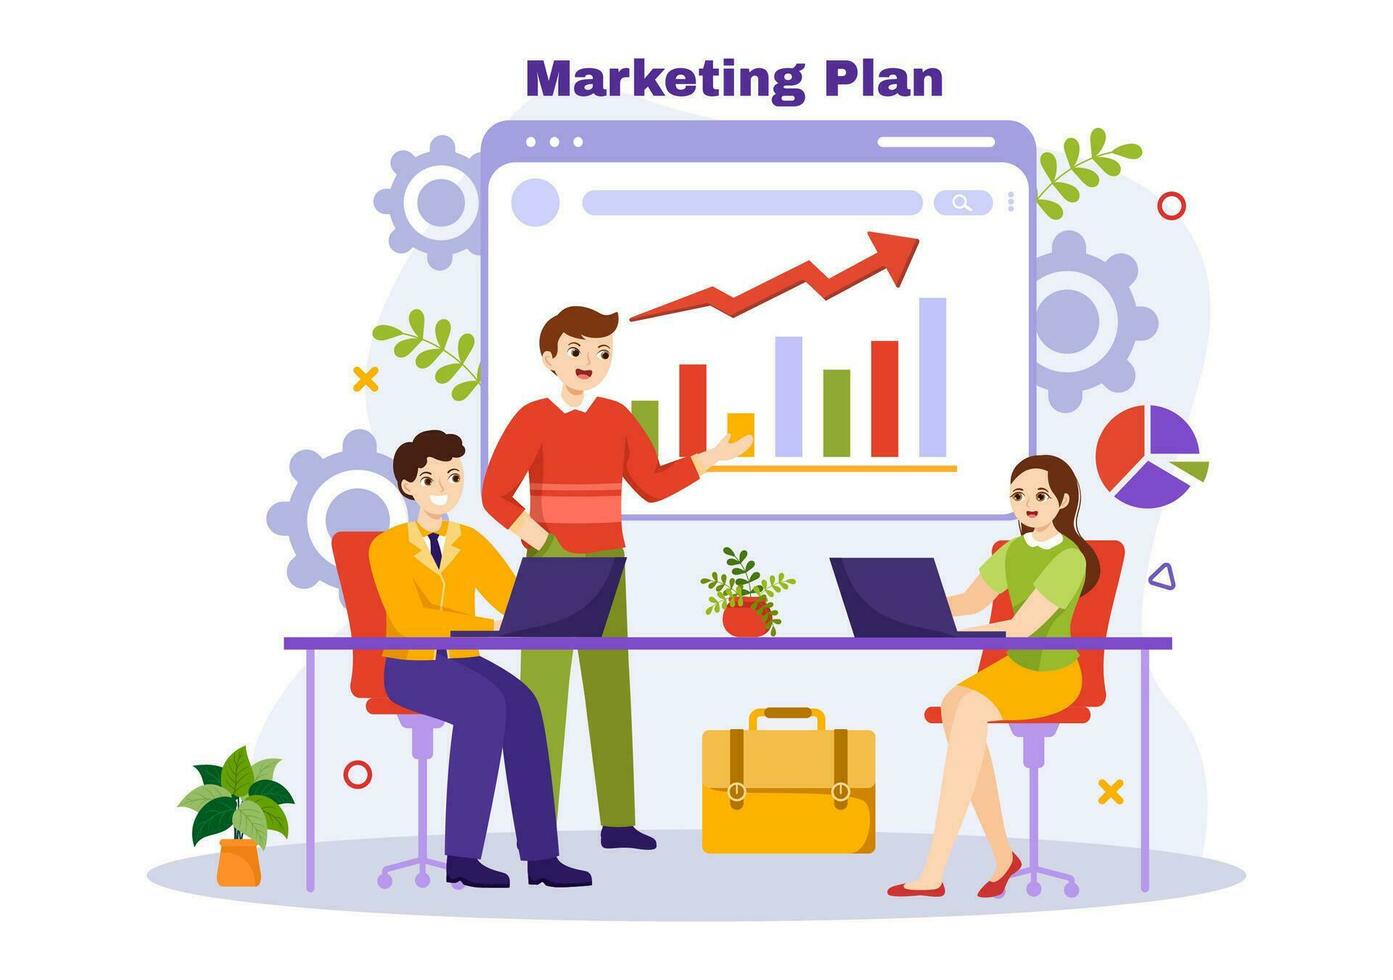 márketing plan y negocio estrategia vector ilustración con eficaz hora planificación y presupuesto crecimiento en objetivo plano dibujos animados antecedentes diseño